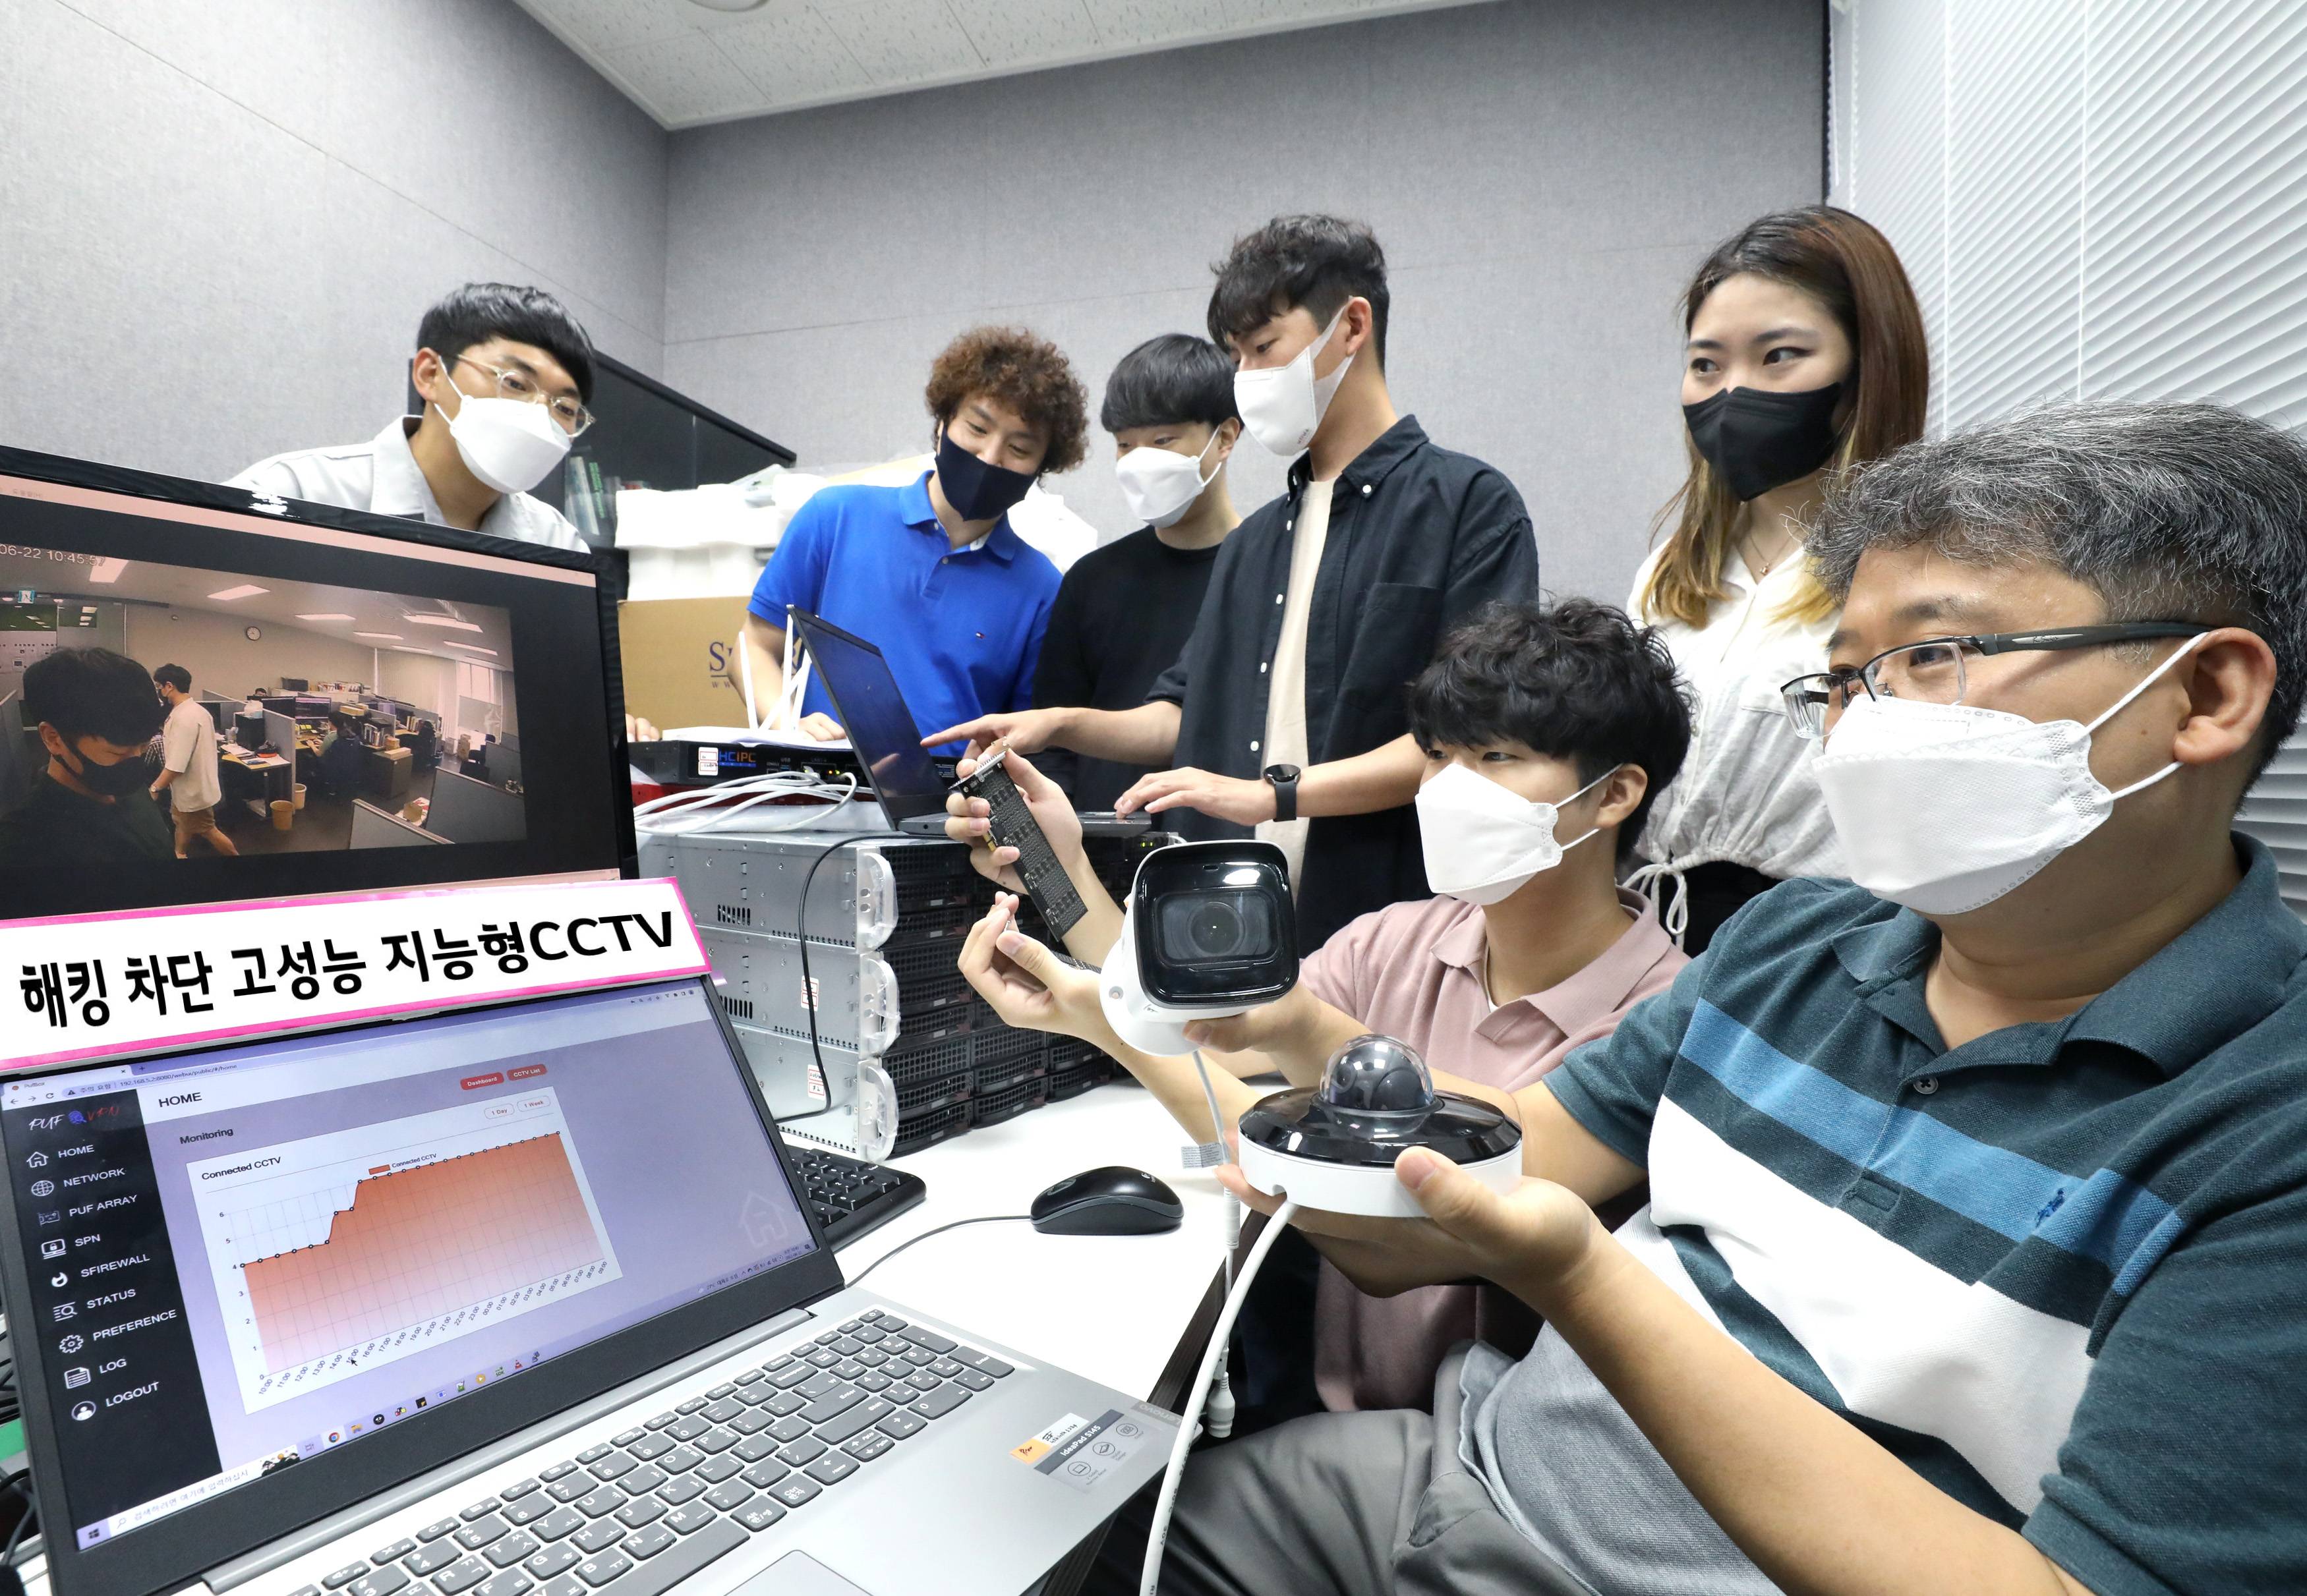 해킹 차단 고성능 지능형 CCTV 이미지가 노출되는 노트북 앞에서 CCTV를 들고 있는 한 남성과 여섯 명의 사람들의 모습